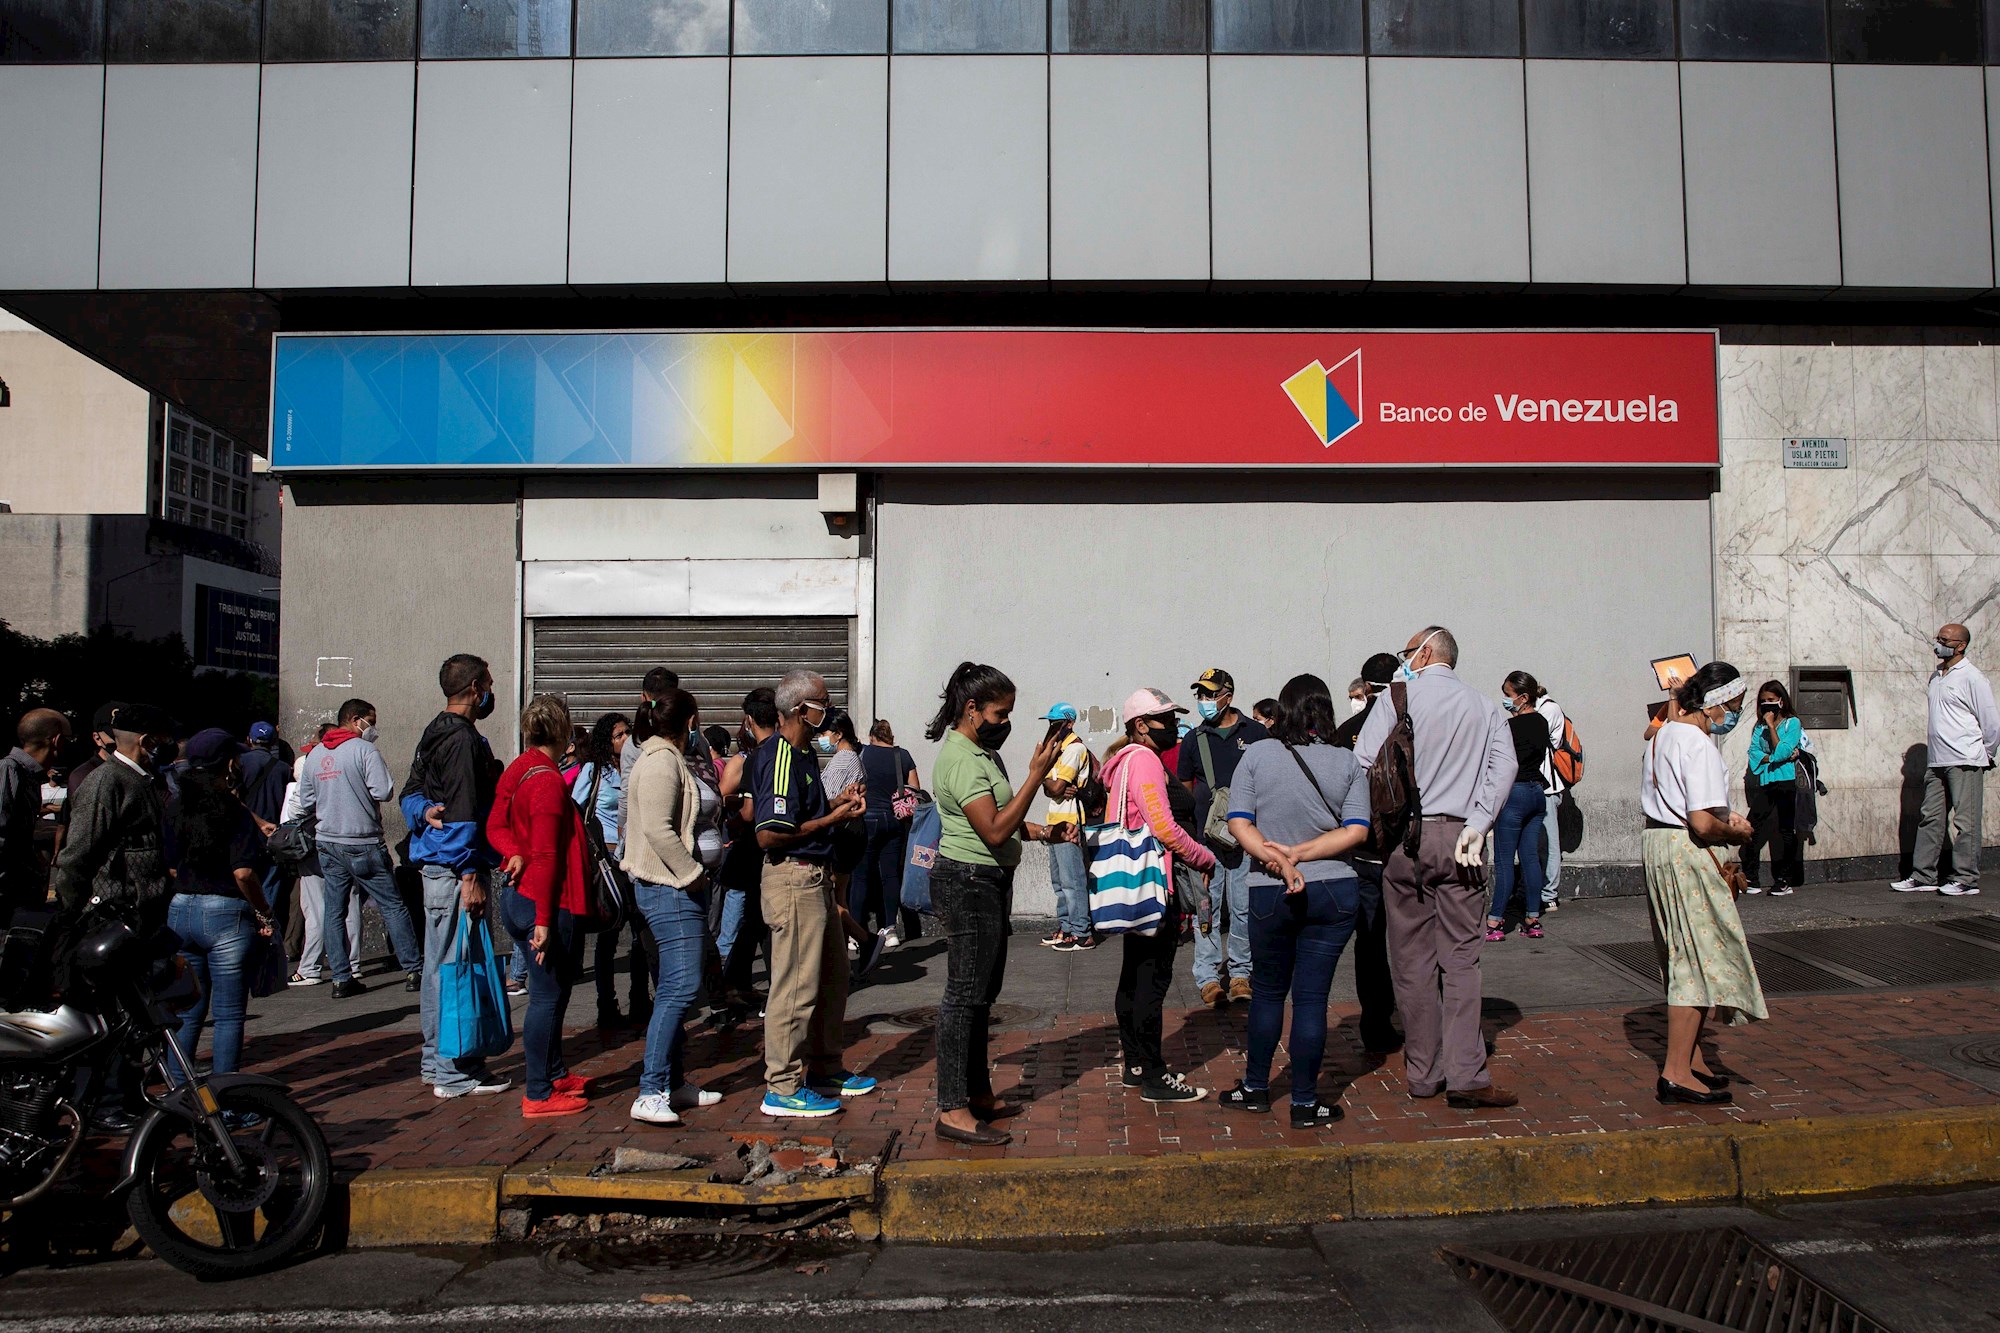 Usuarios alertan caída de la plataforma mientras el Banco de Venezuela guarda silencio